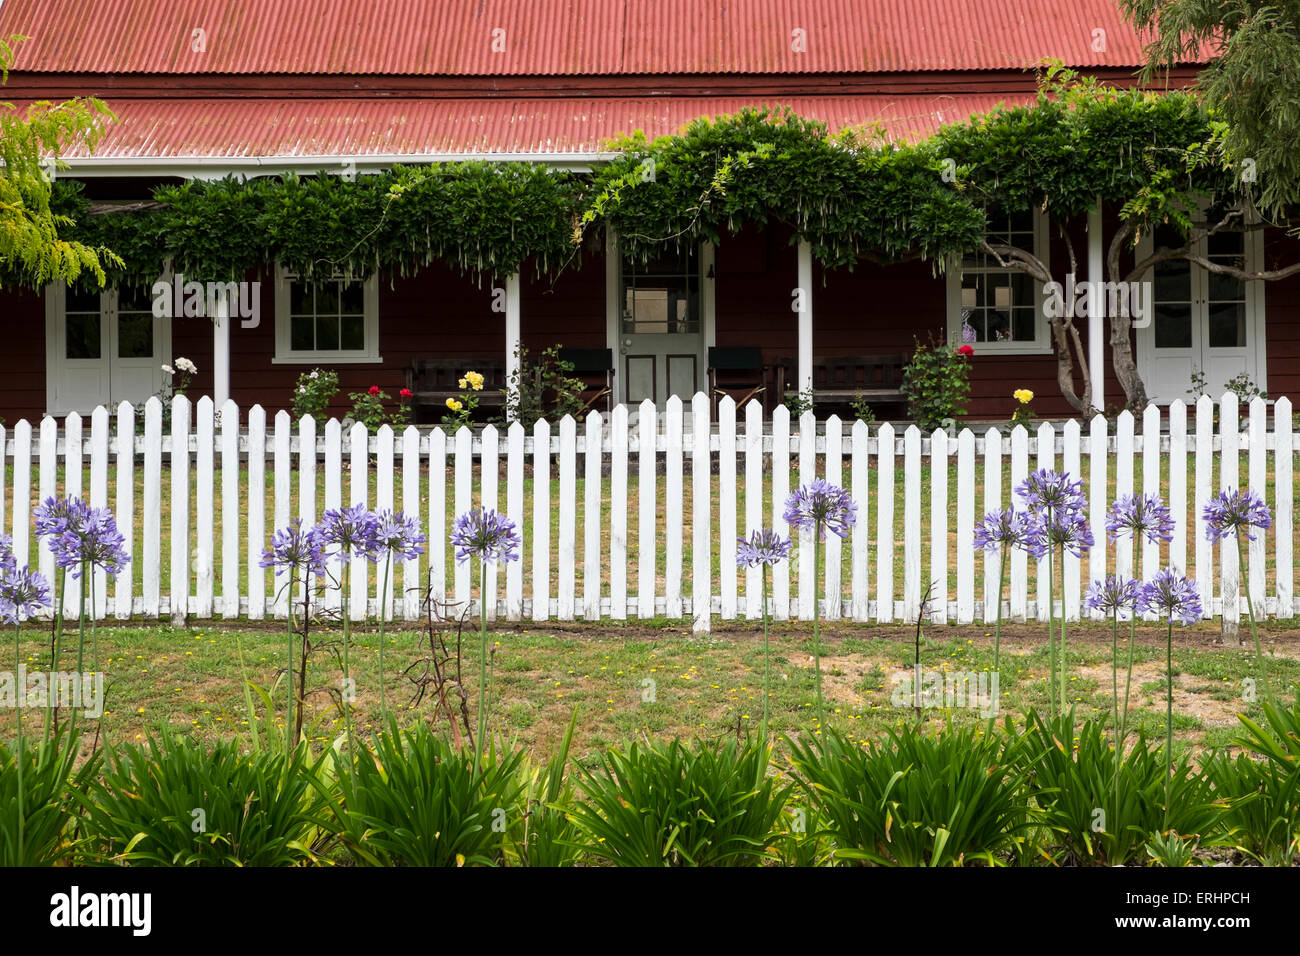 Détail d'une maison au toit de tôle avec porche, clôture blanche et agapanthus fleurs, Nouvelle-Zélande. Banque D'Images